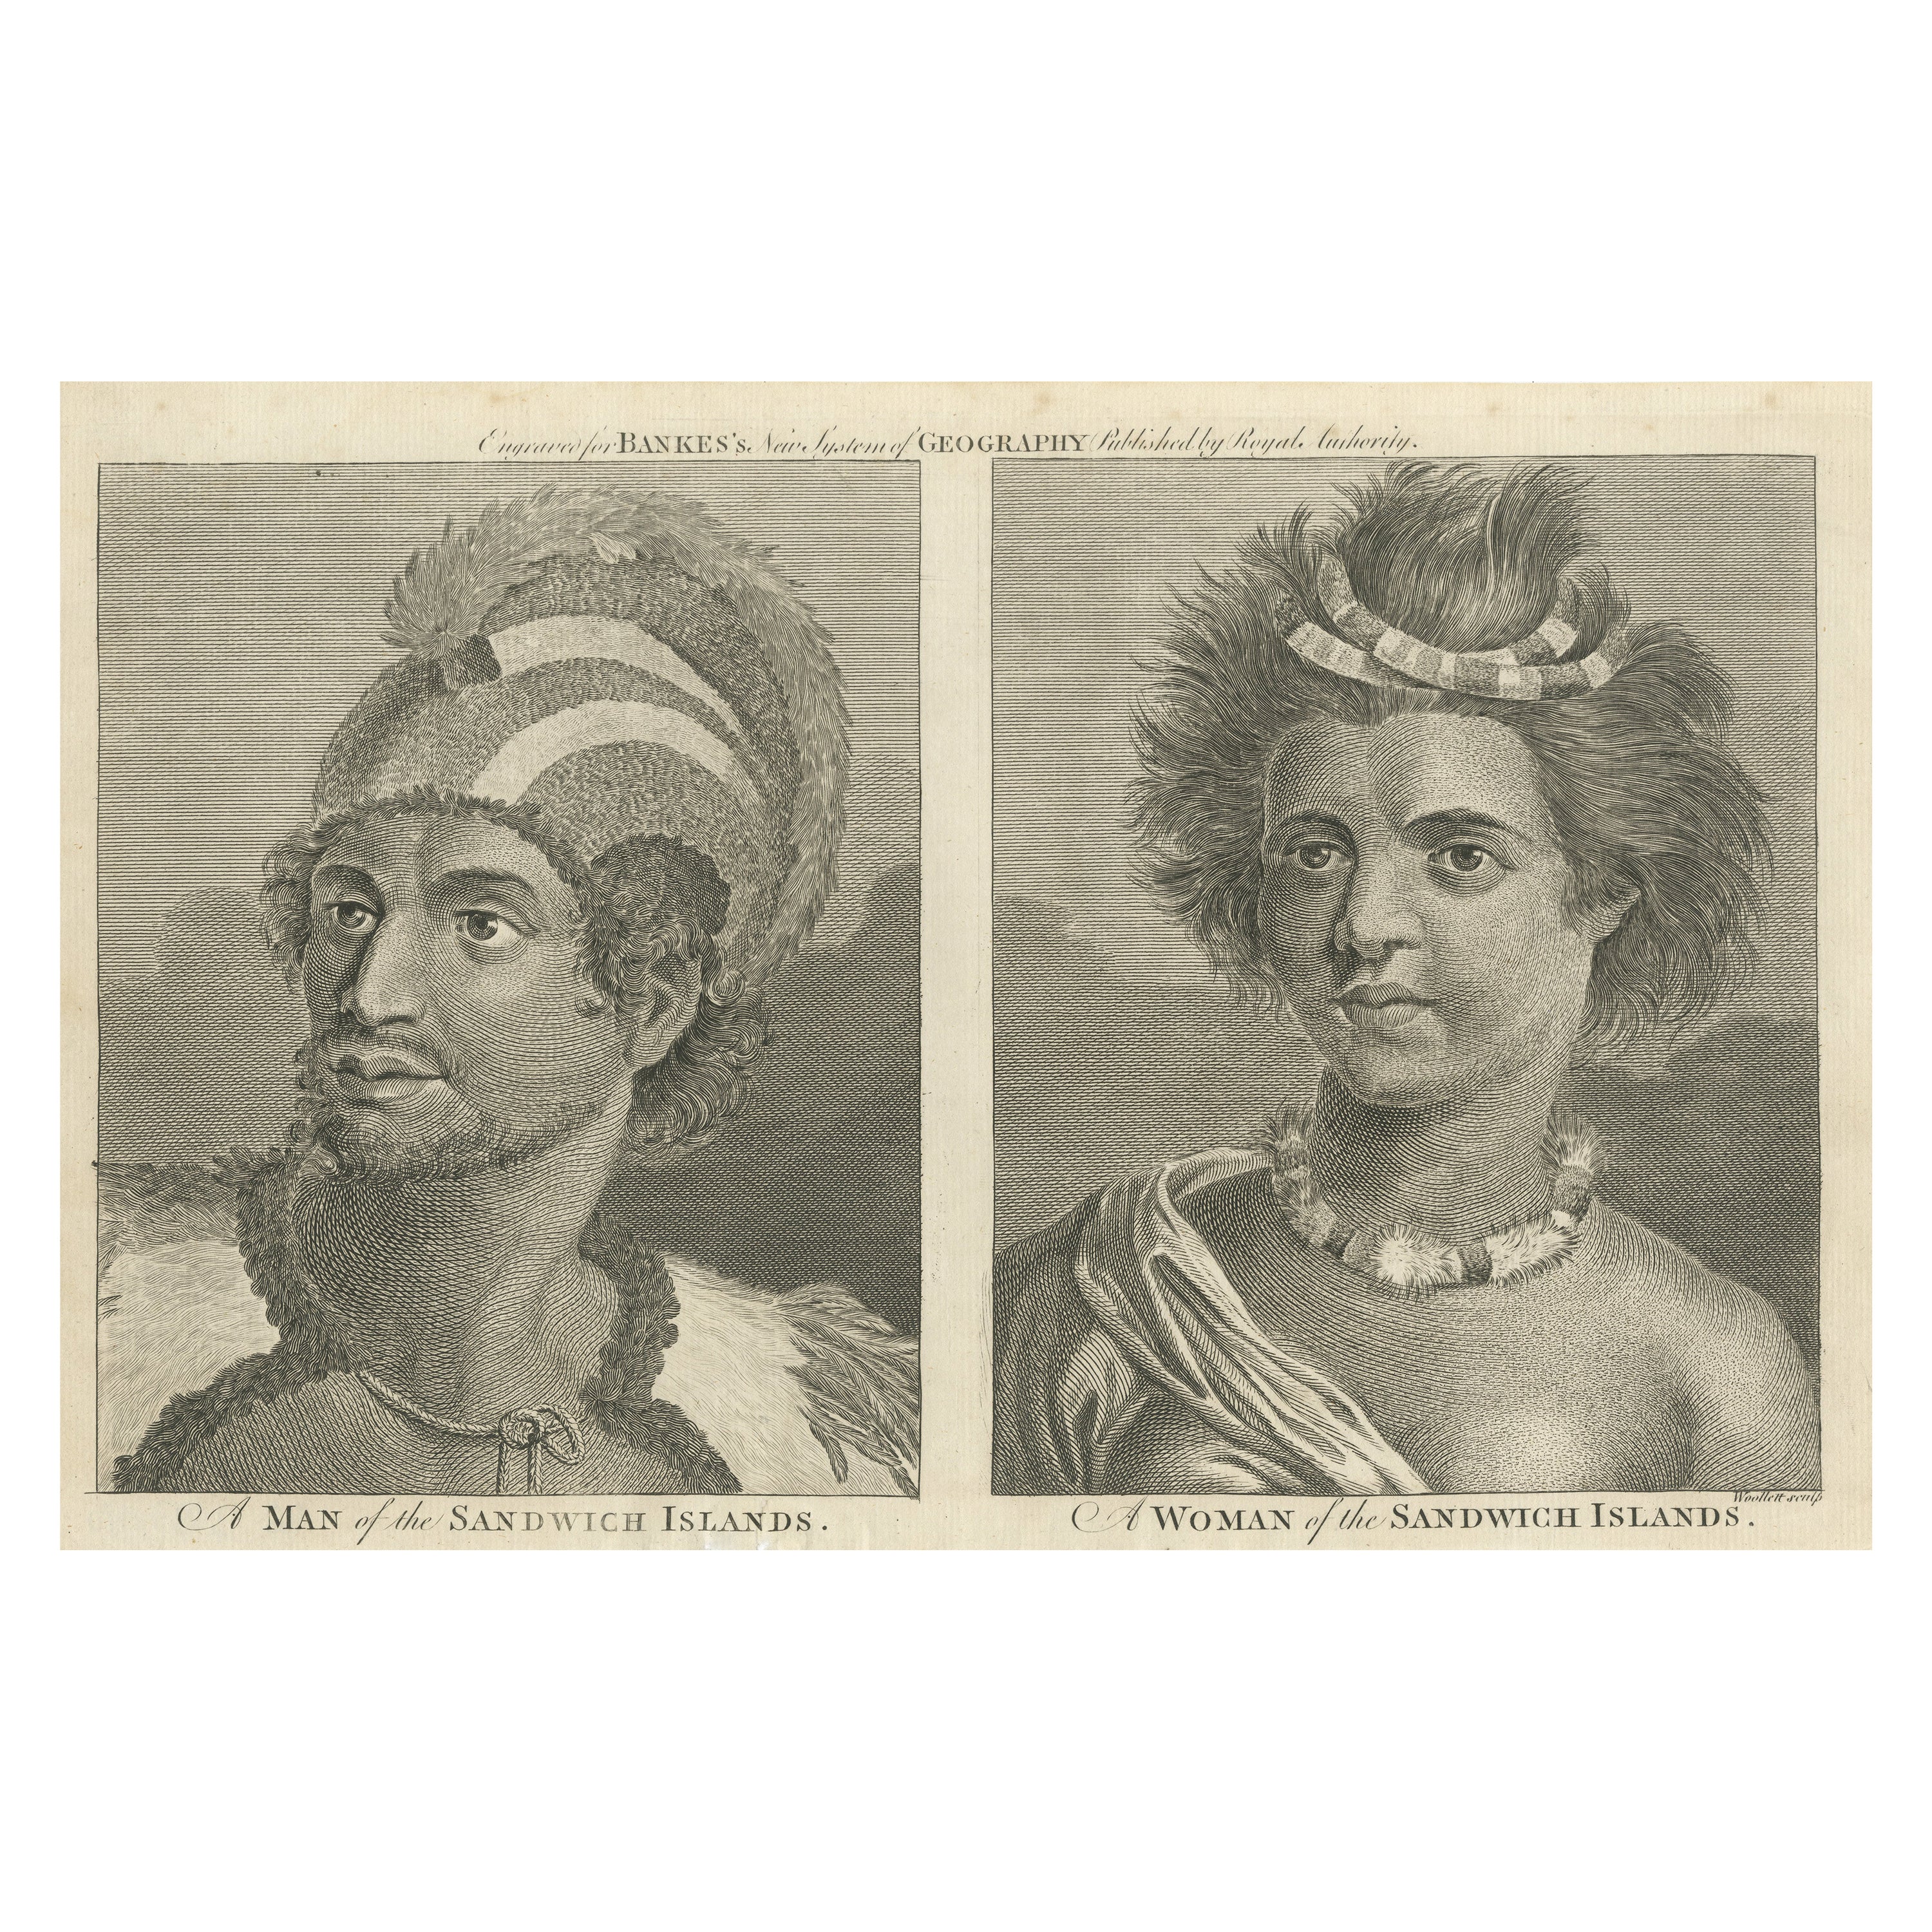 Porträts von Adeligen von den Sandwich-Inseln (Hawaii), veröffentlicht um 1790